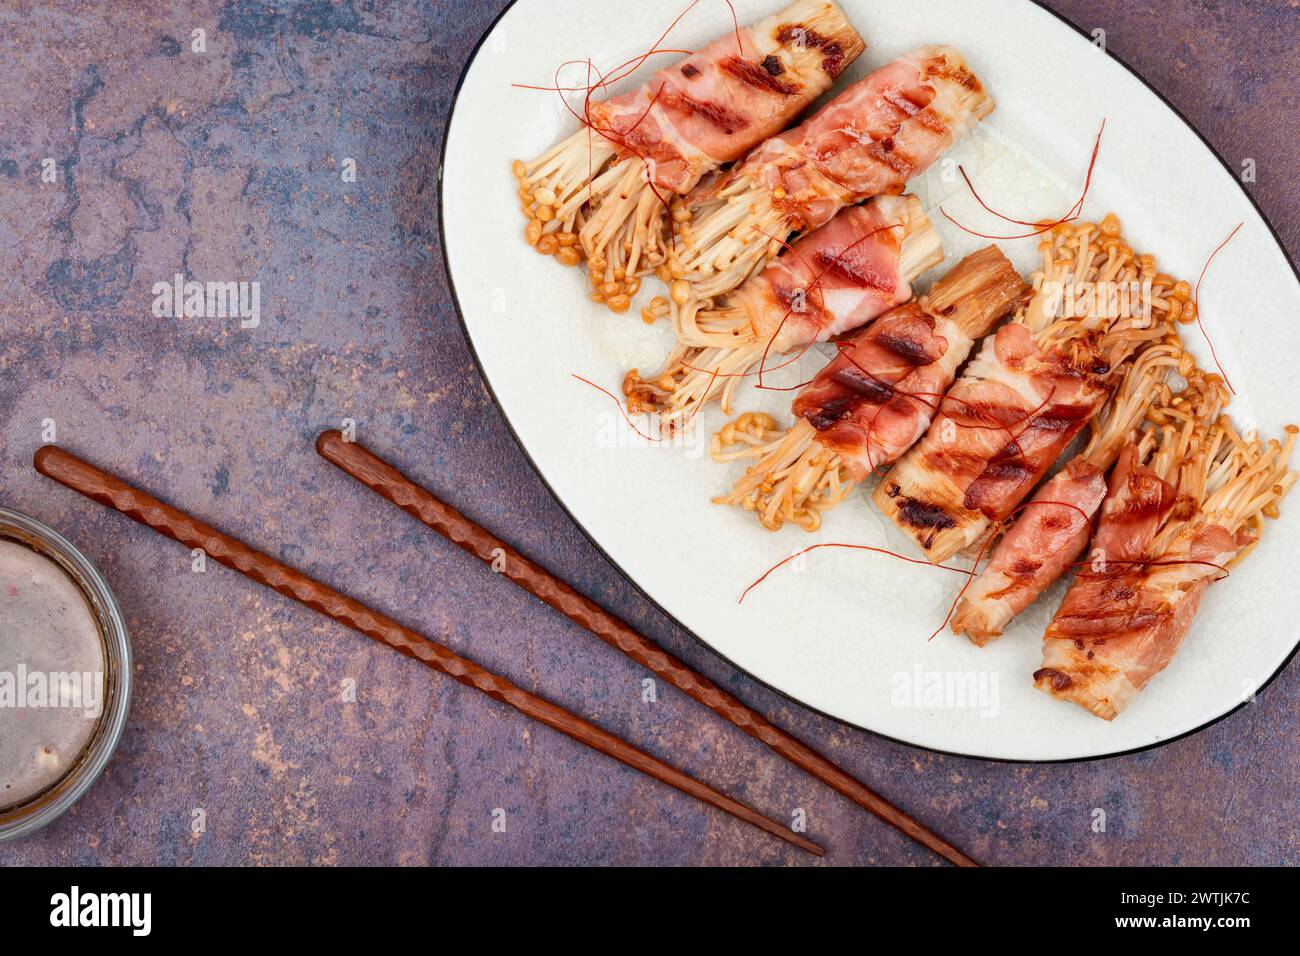 Champignon Enoki ou enokitake rôti au bacon sur assiette. Champignon enveloppé de bacon. Pose à plat avec espace de copie. Banque D'Images